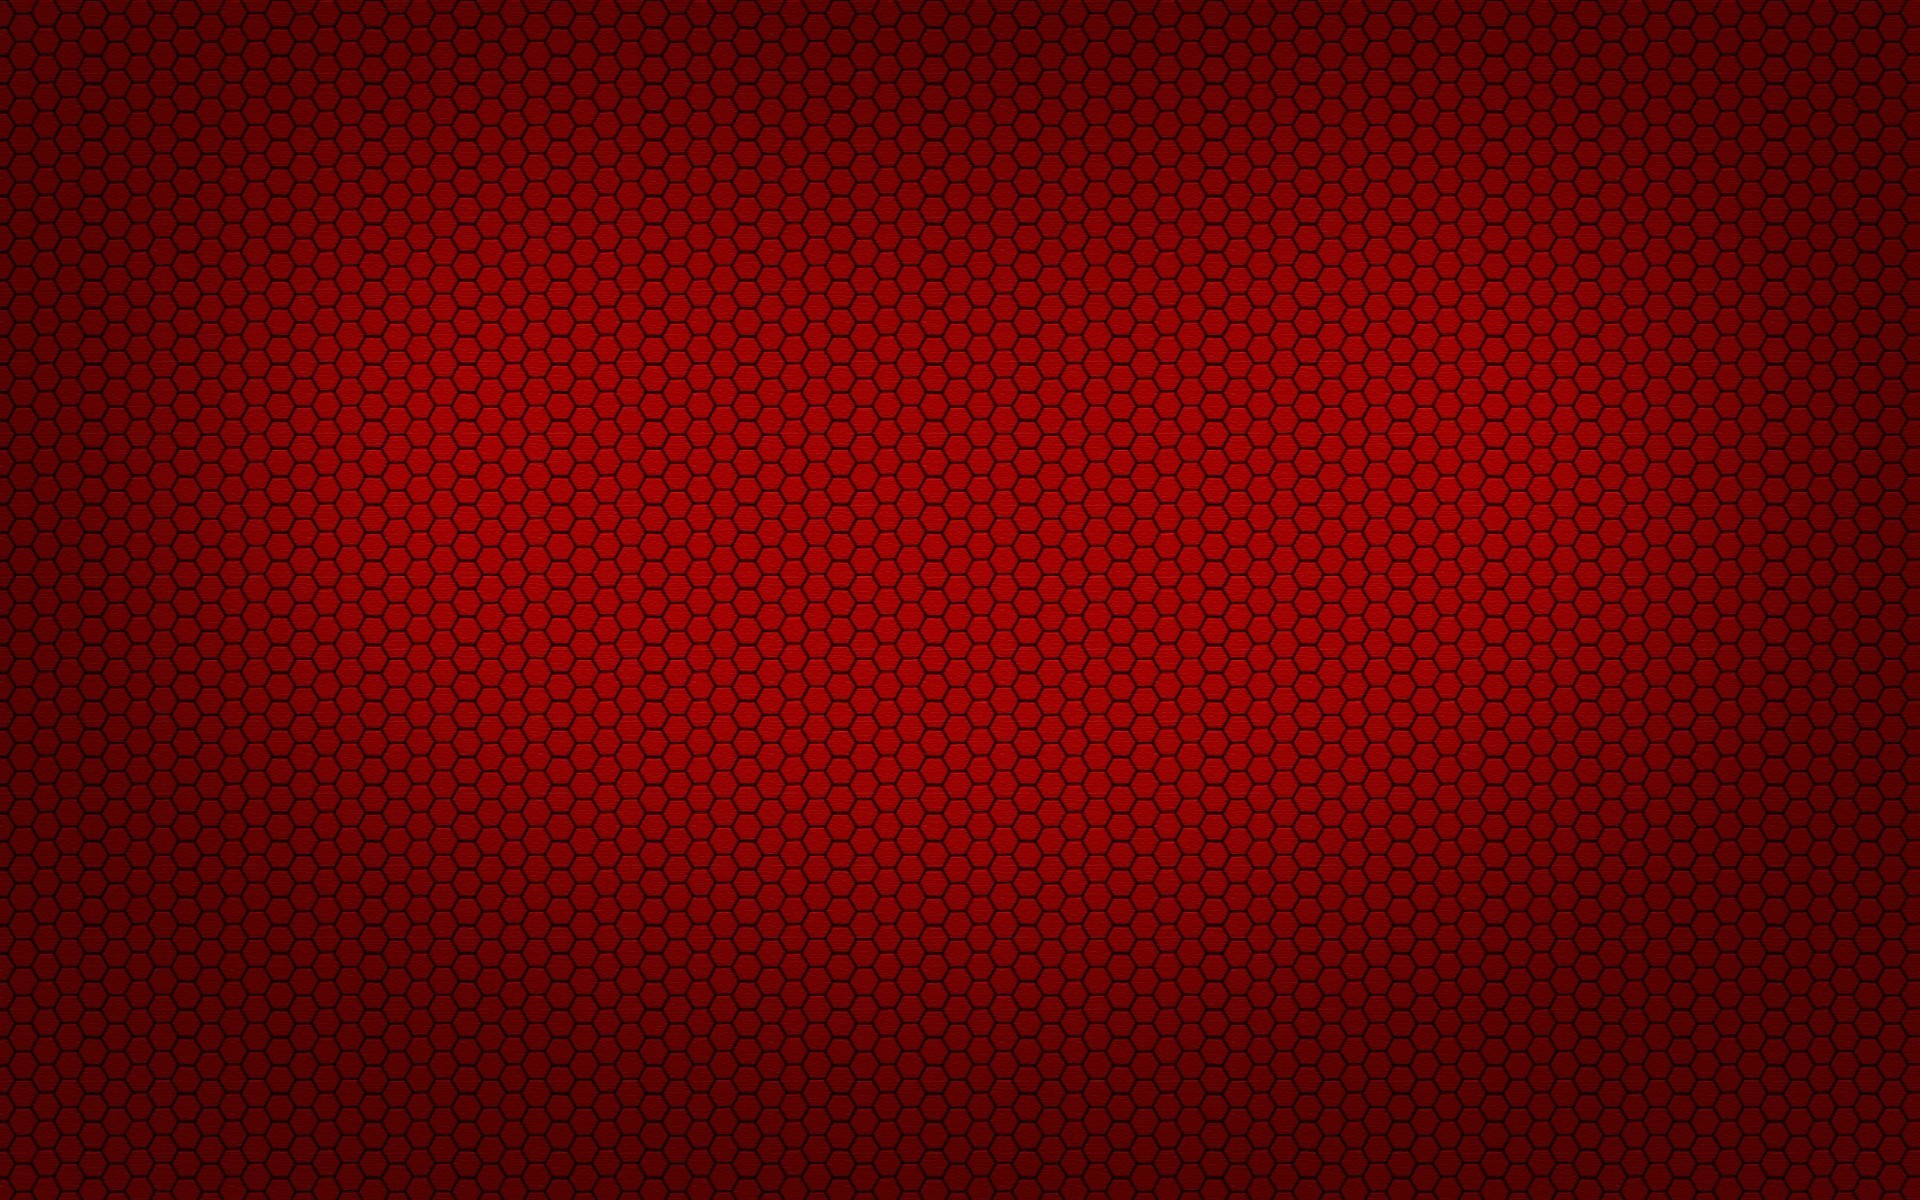 Dark Red Plain Hd Background